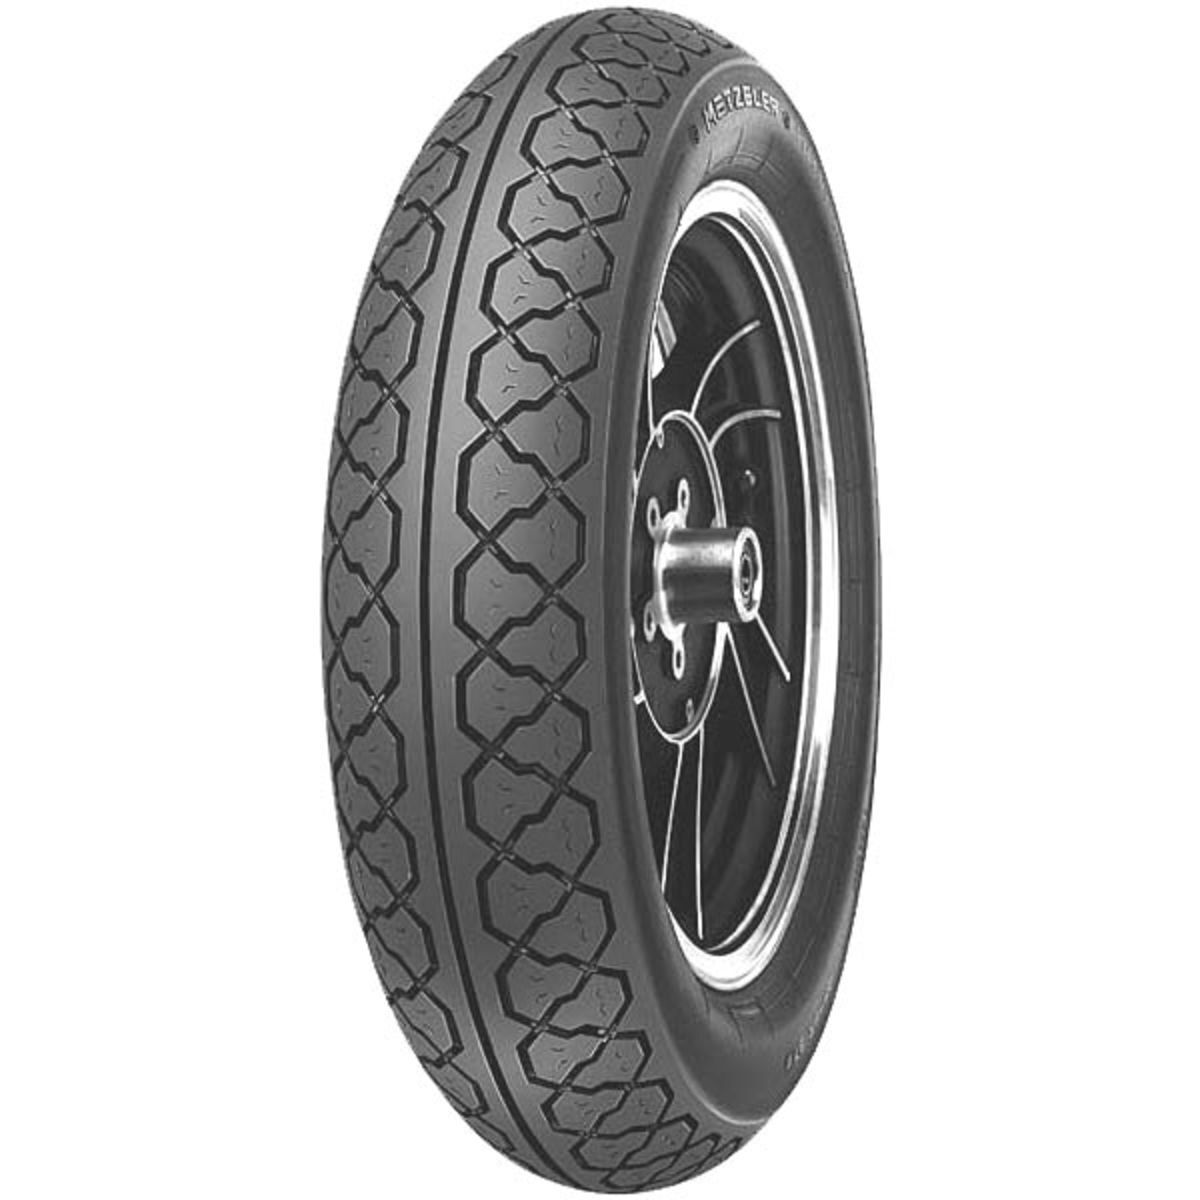 Neumático de carretera METZELER PERFECT ME77 110/90-16 TL 59S